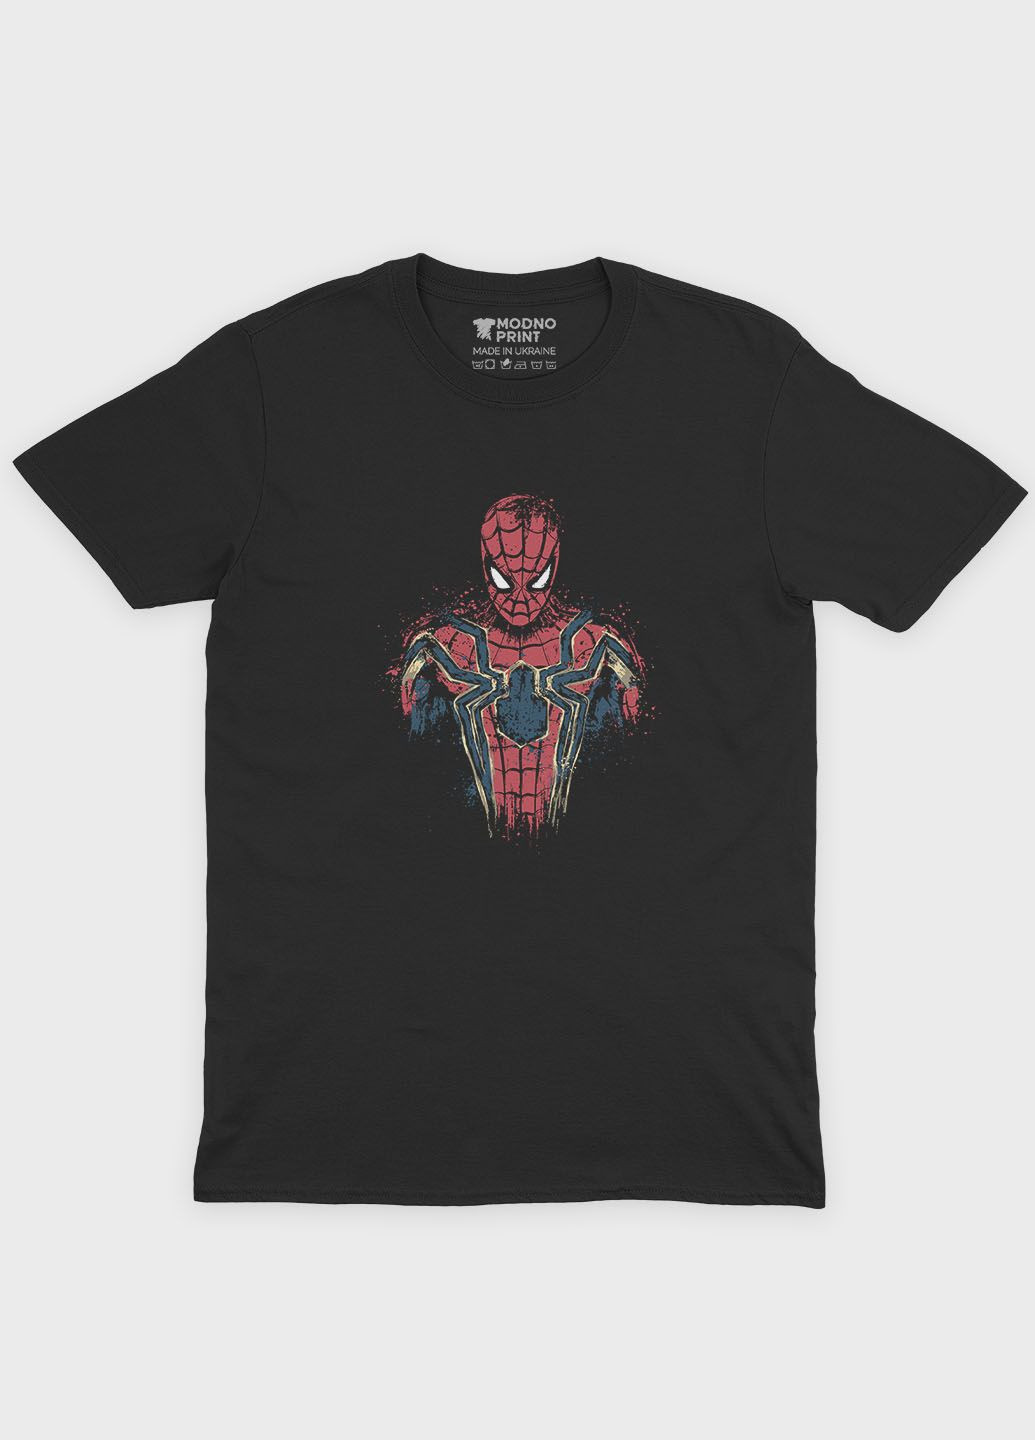 Черная демисезонная футболка для девочки с принтом супергероя - человек-паук (ts001-1-gl-006-014-066-g) Modno